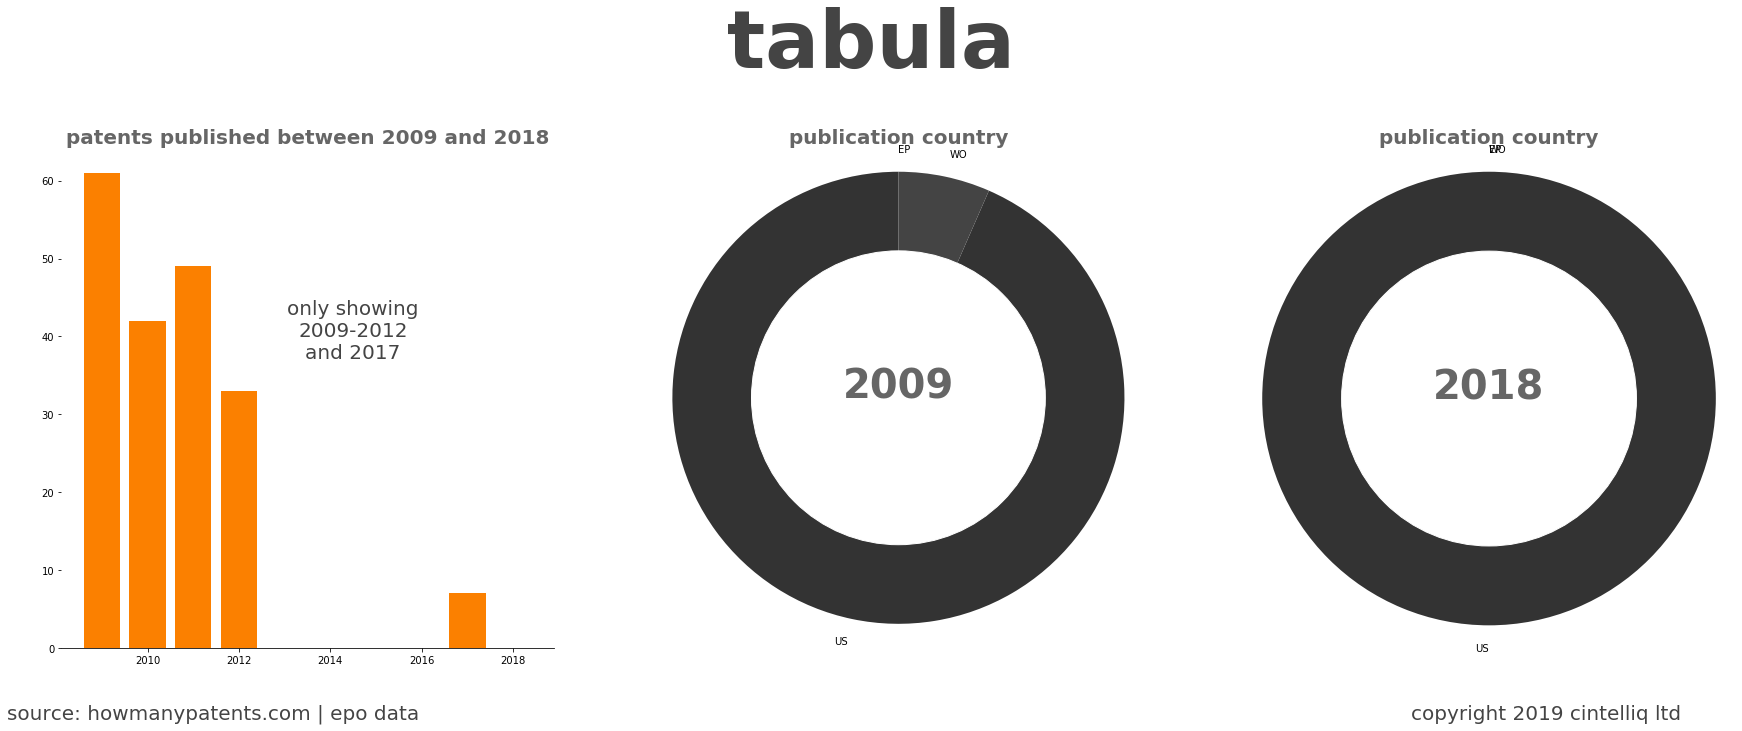 summary of patents for Tabula